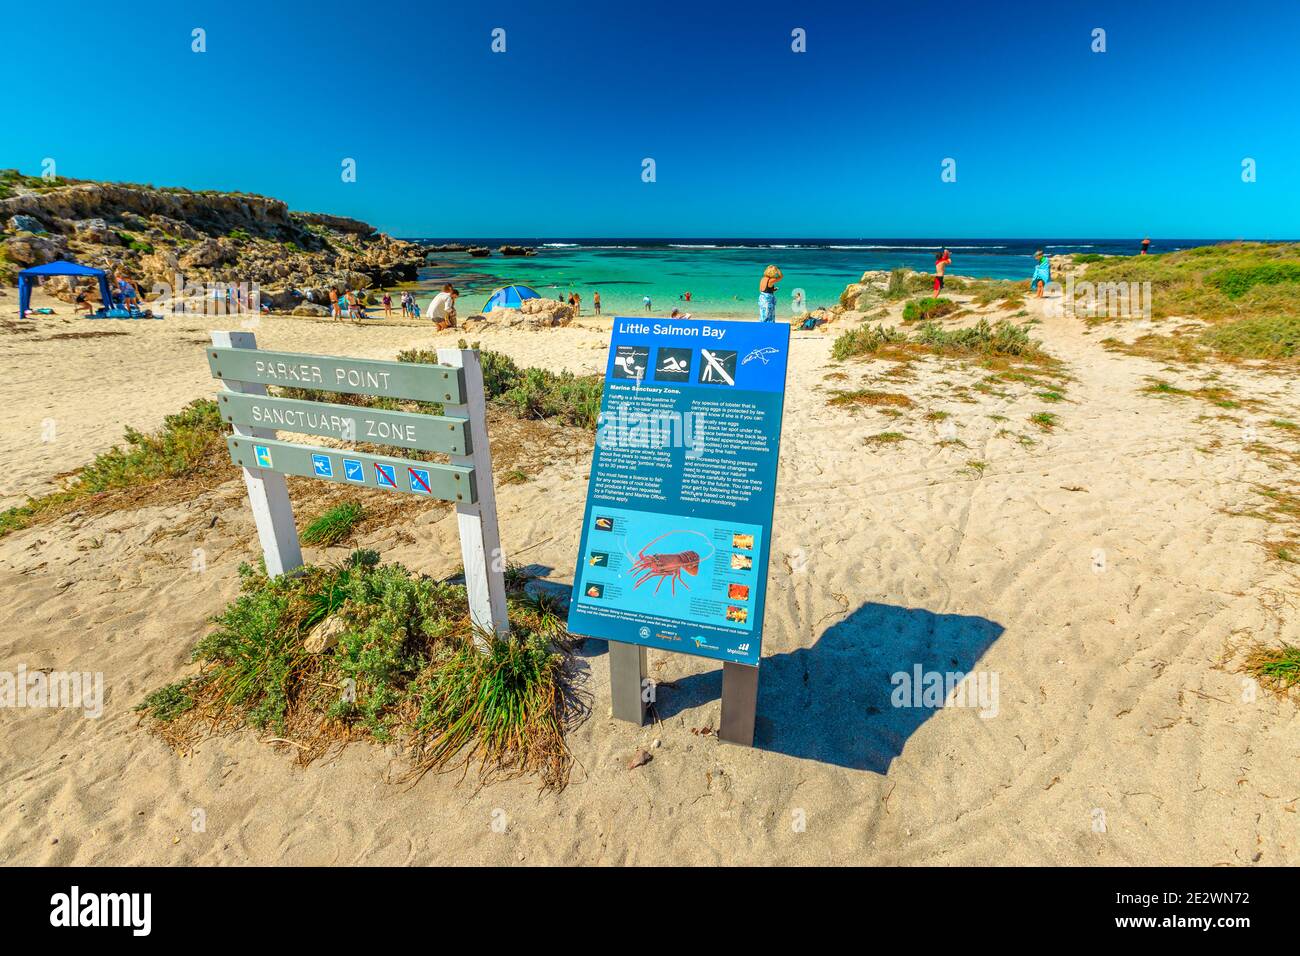 Rottnest Island, Australie occidentale - 4 janvier 2018 : panneau de Little Salmon Bay, un paradis pour la plongée en apnée, la natation et le soleil. Tourisme à Perth Banque D'Images